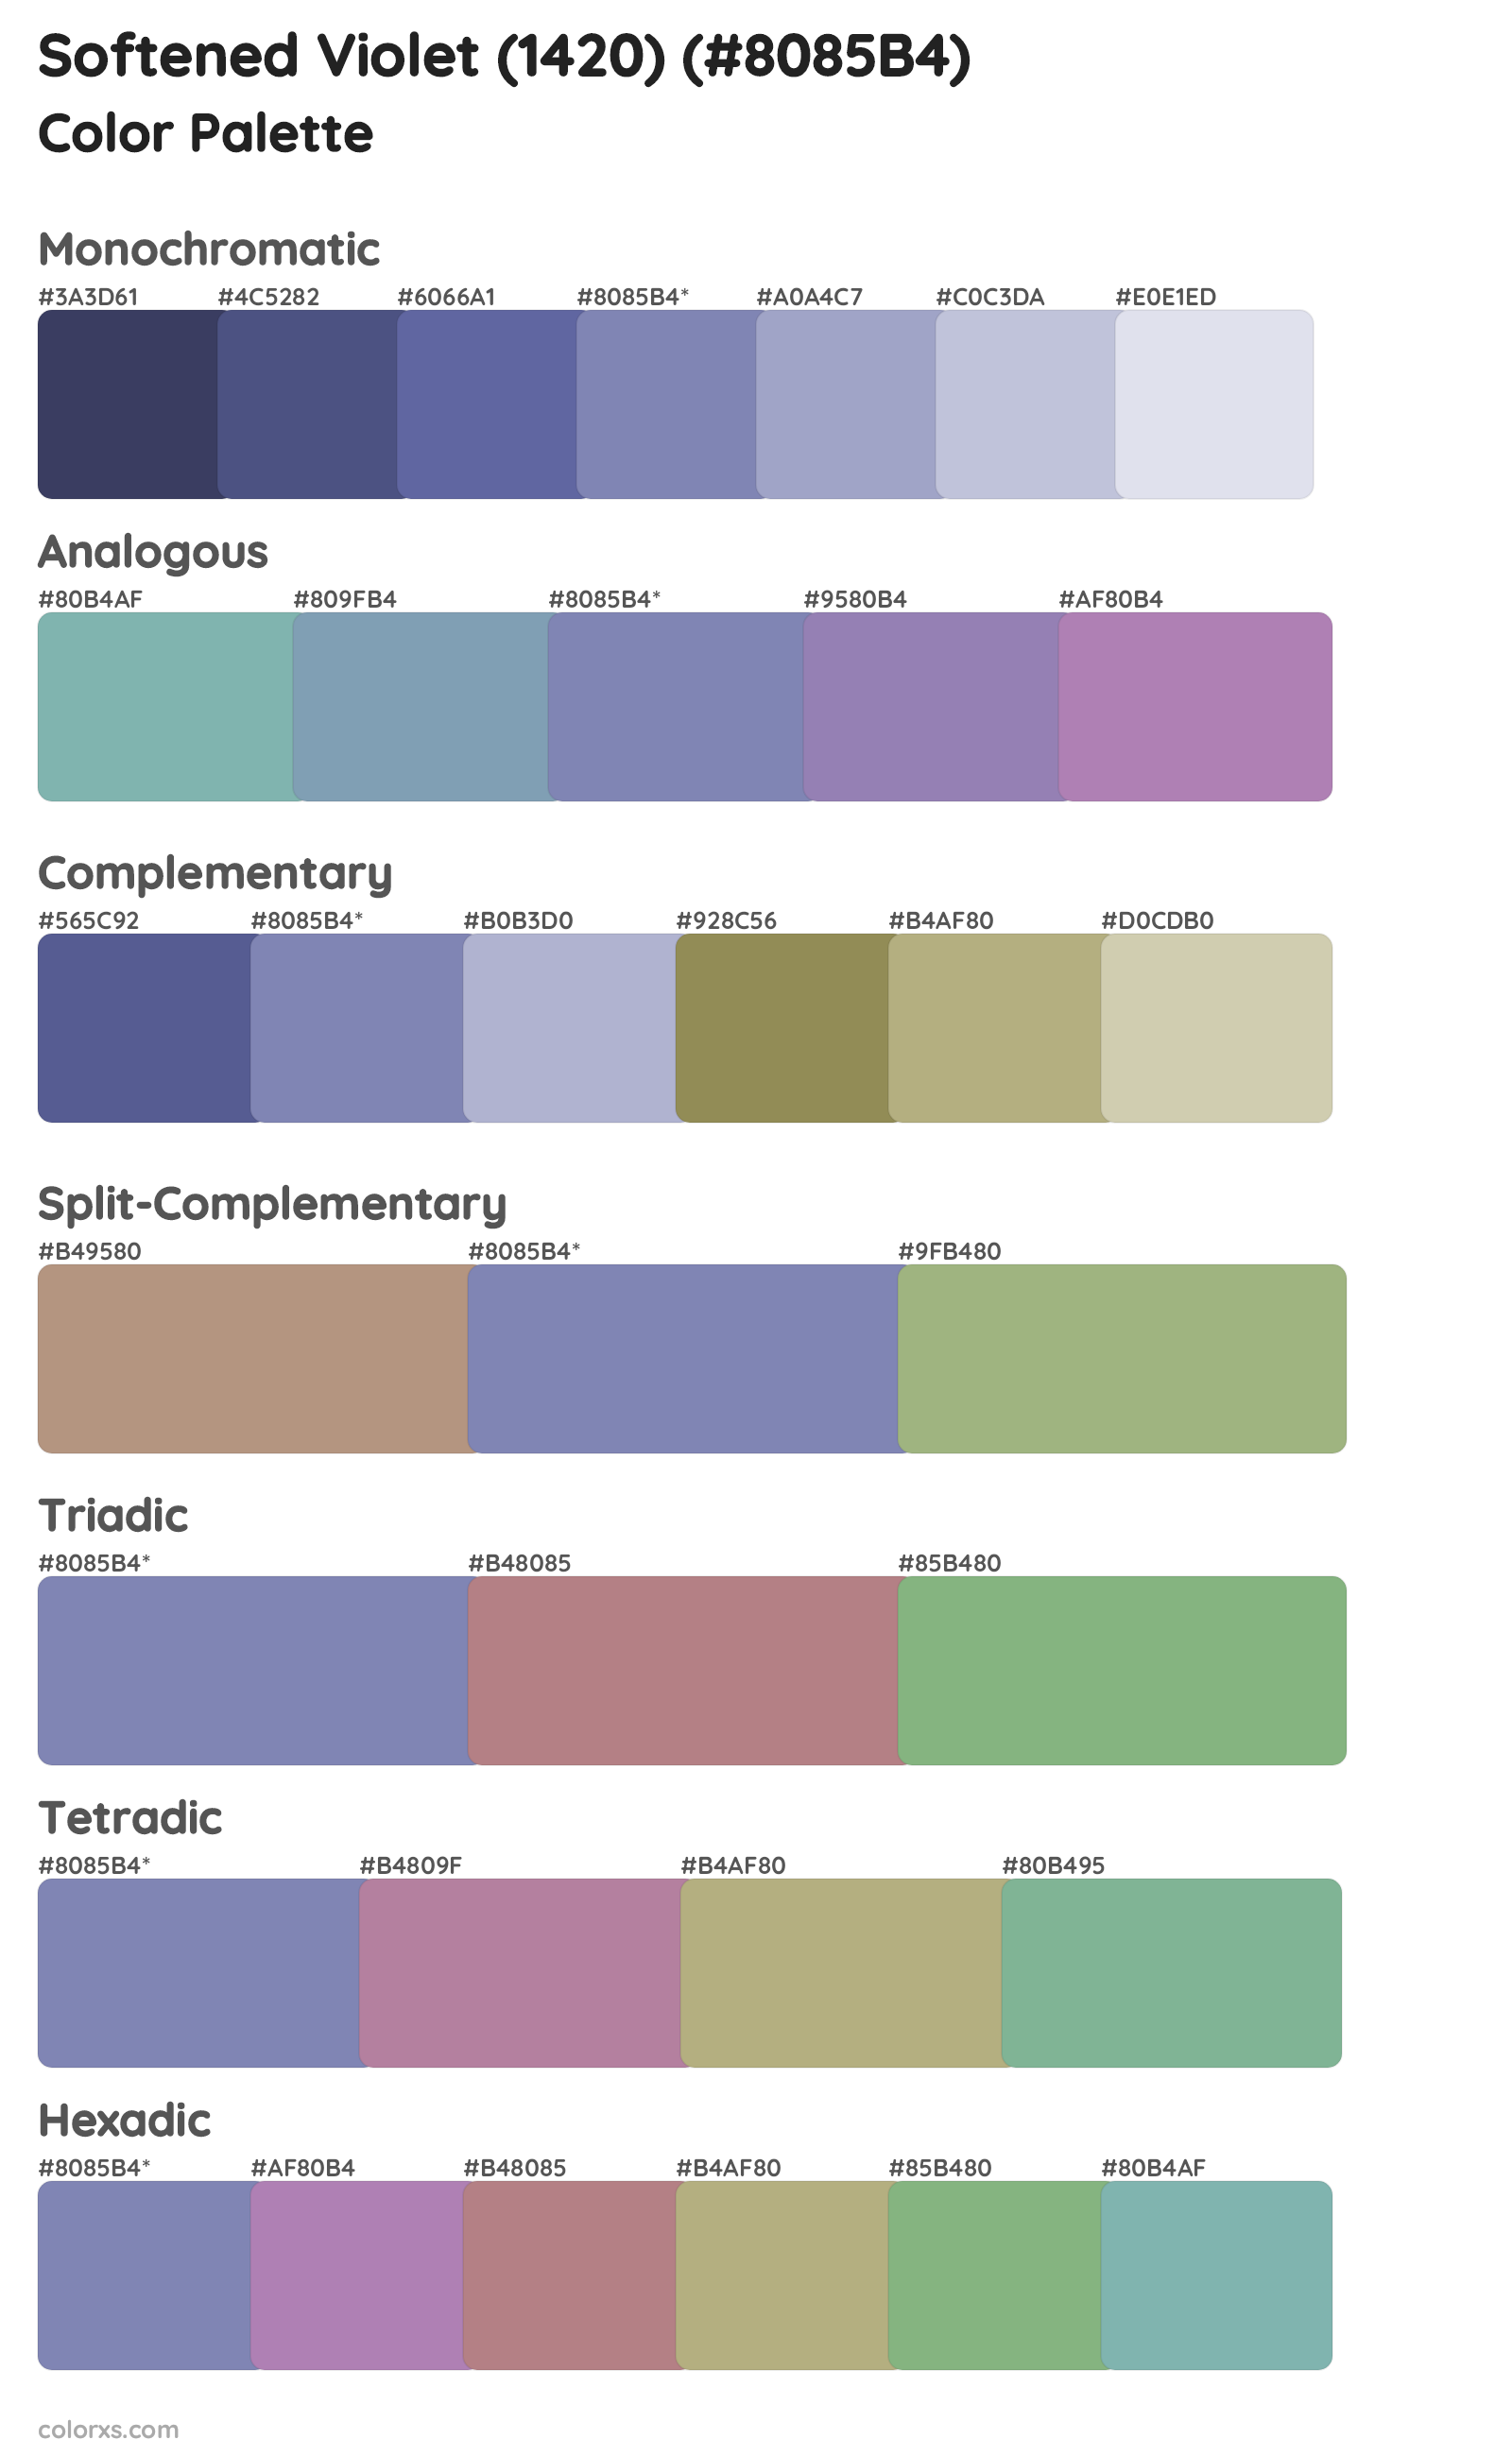 Softened Violet (1420) Color Scheme Palettes